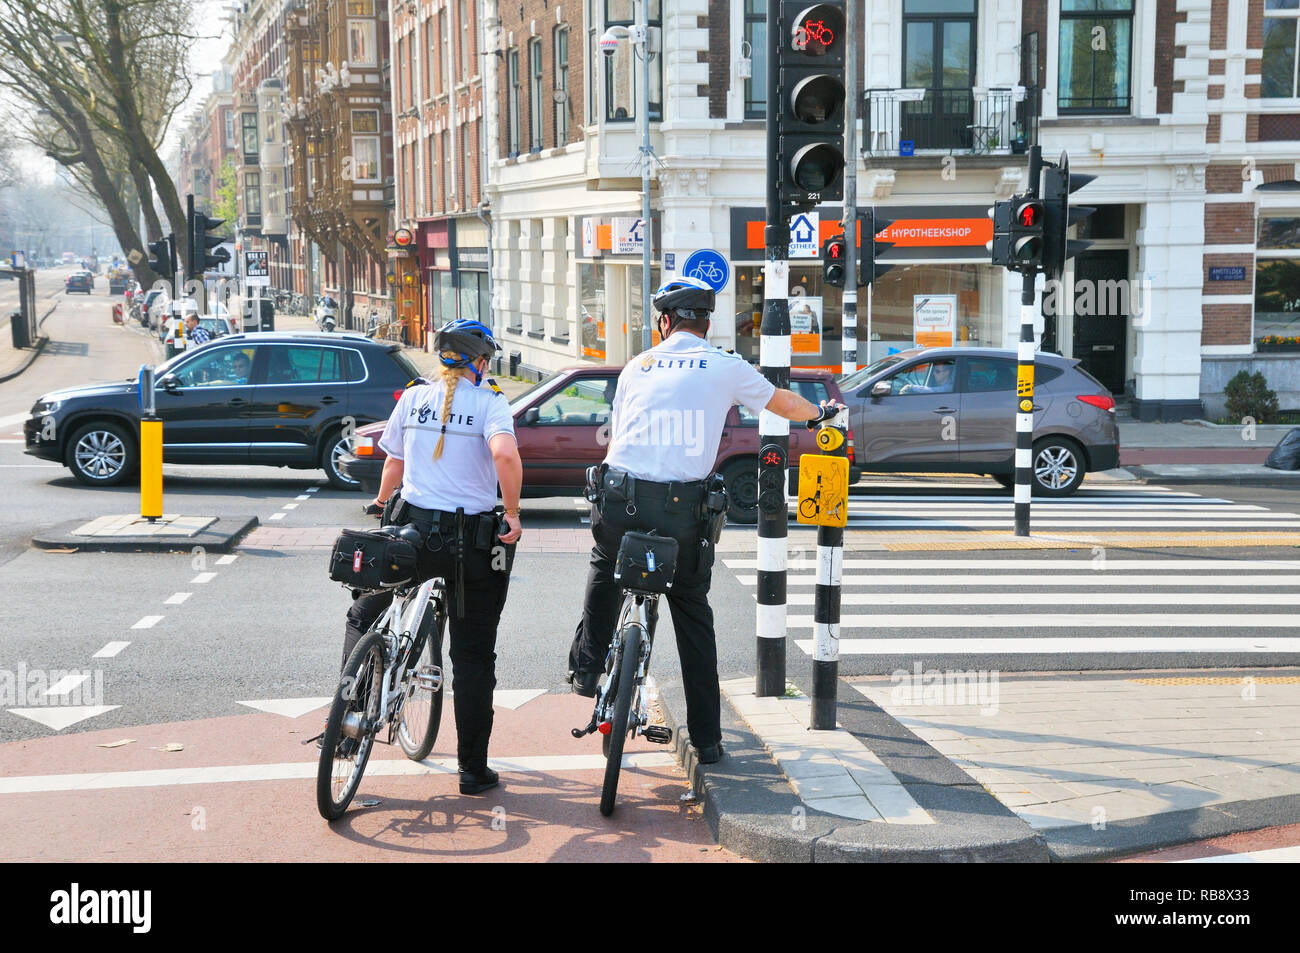 La polizia olandese ufficiali (politie) on bike patrol in attesa ad un semaforo, Amsterdam, Olanda Settentrionale, Paesi Bassi Foto Stock